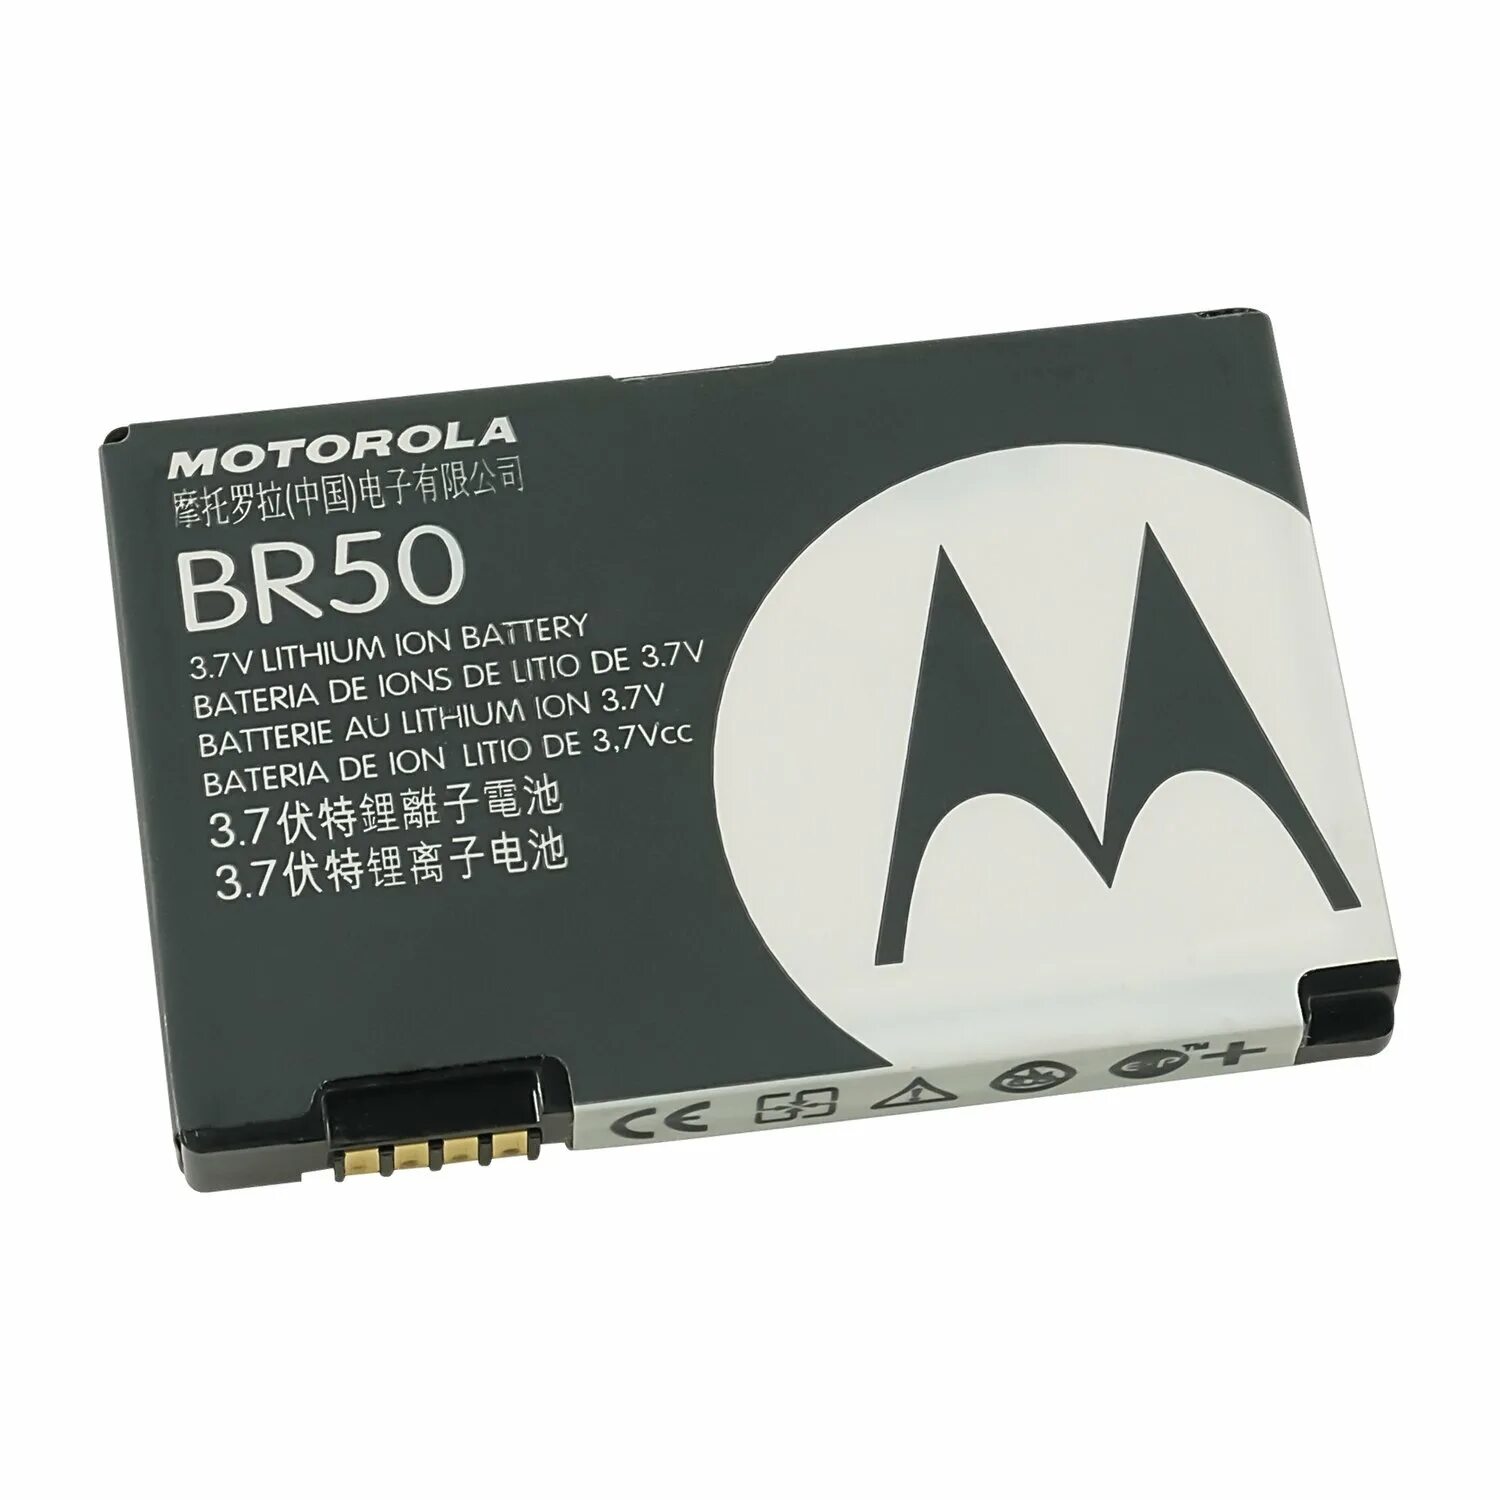 Батарейка br50 Motorola. Motorola RAZR v3 аккумулятор. Аккумулятор Моторола RAZR v3 br50. Аккумулятор для телефона Motorola br50.